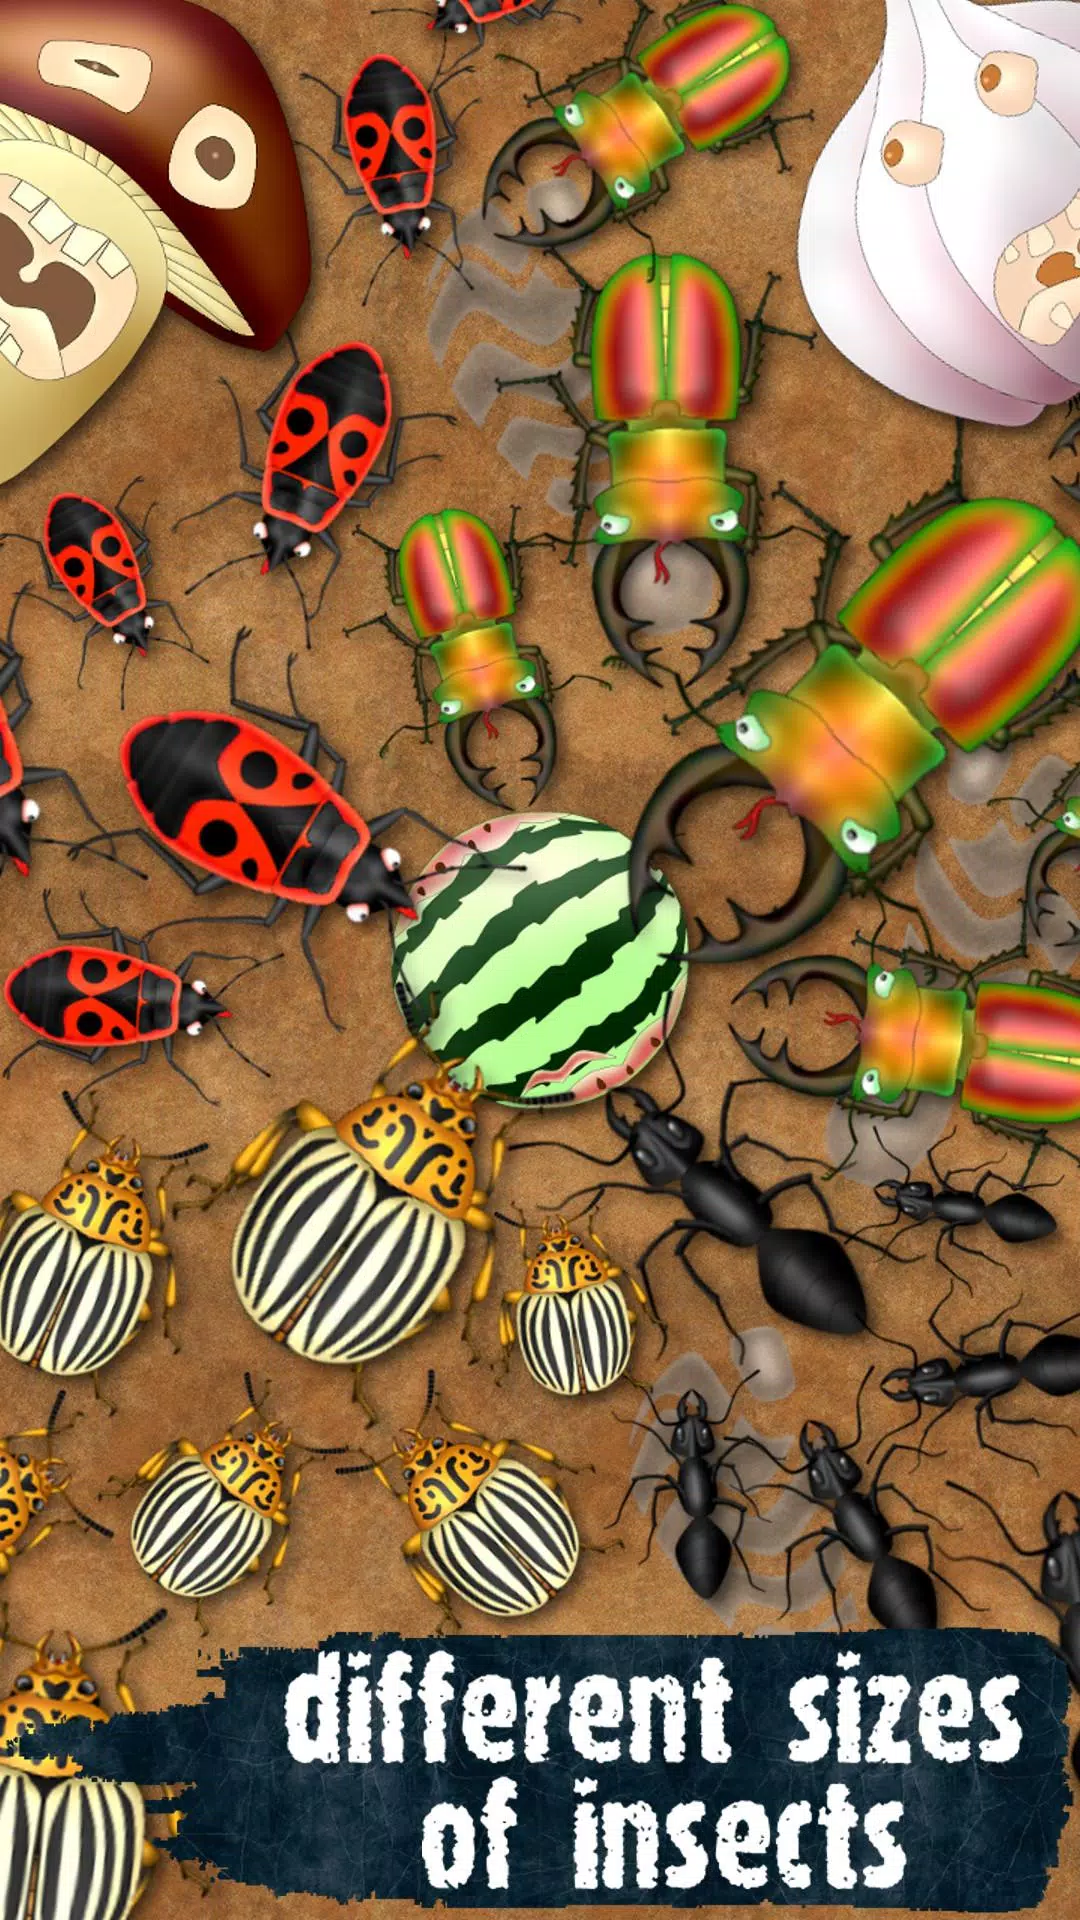 Hexapod لعبة النمل سحق الحشرات APK للاندرويد تنزيل